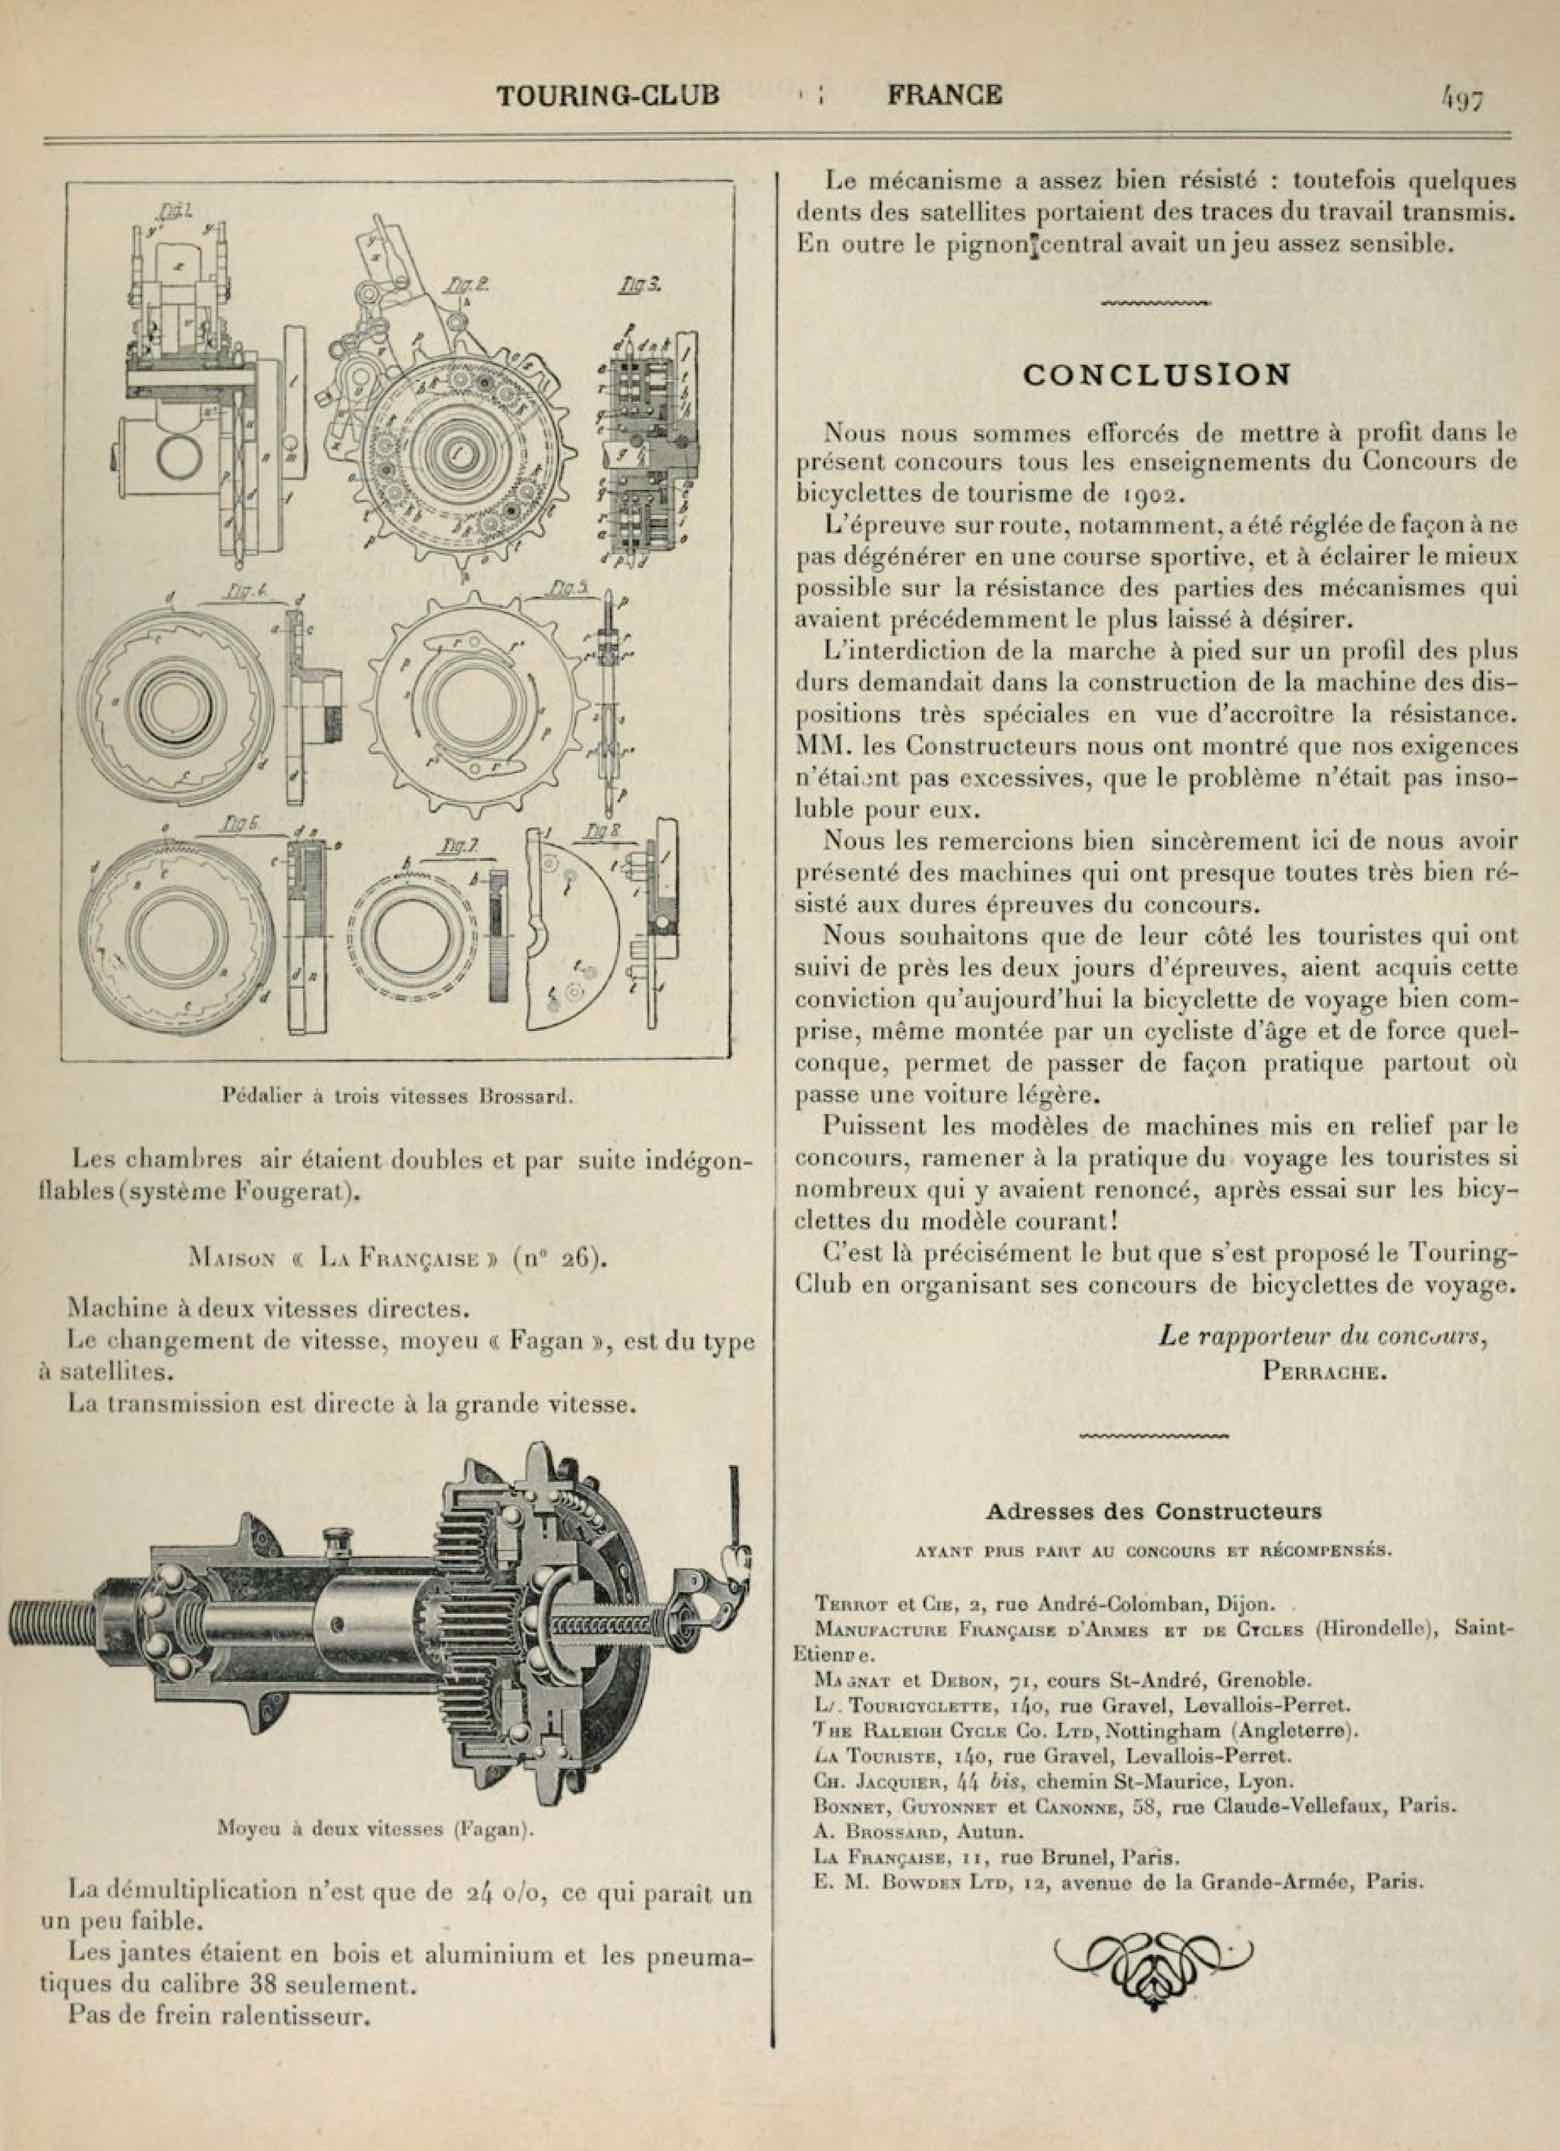 T.C.F. Revue Mensuelle November 1905 - Concours de Bicyclettes de Voyage (part IV) scan 8 main image